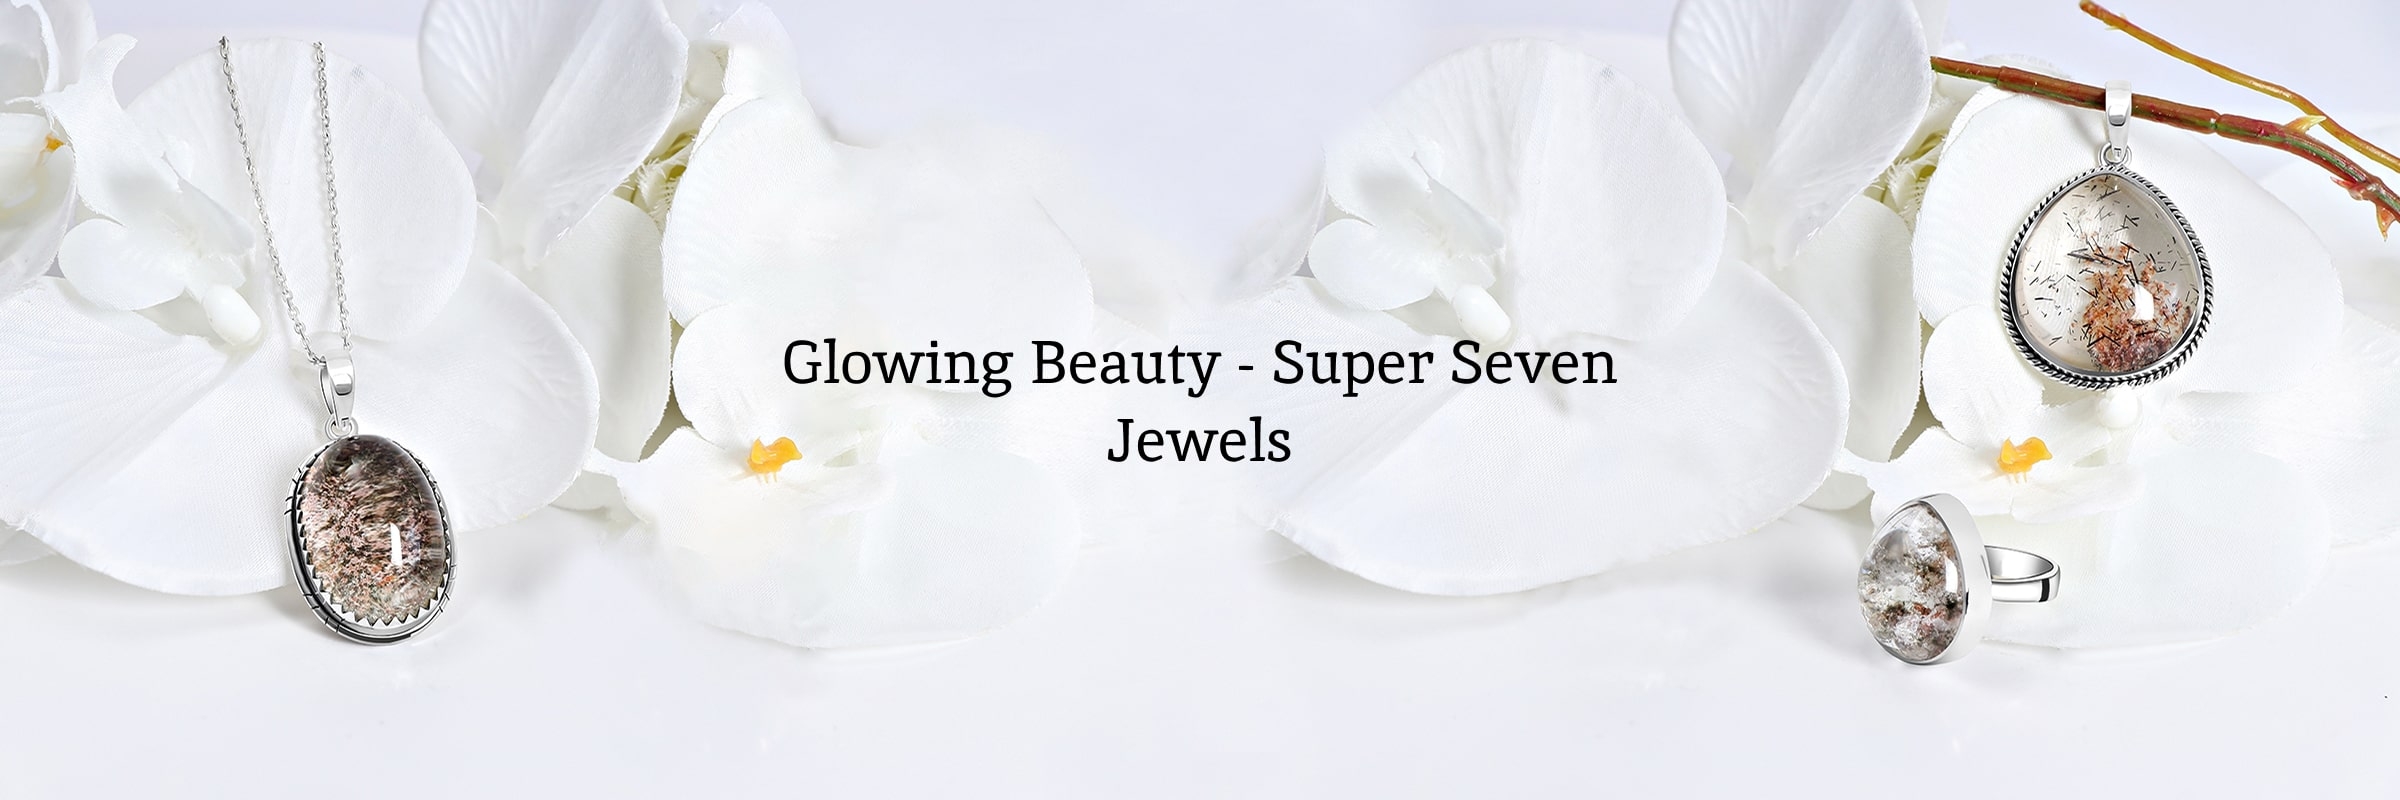 Super Seven Jewelry